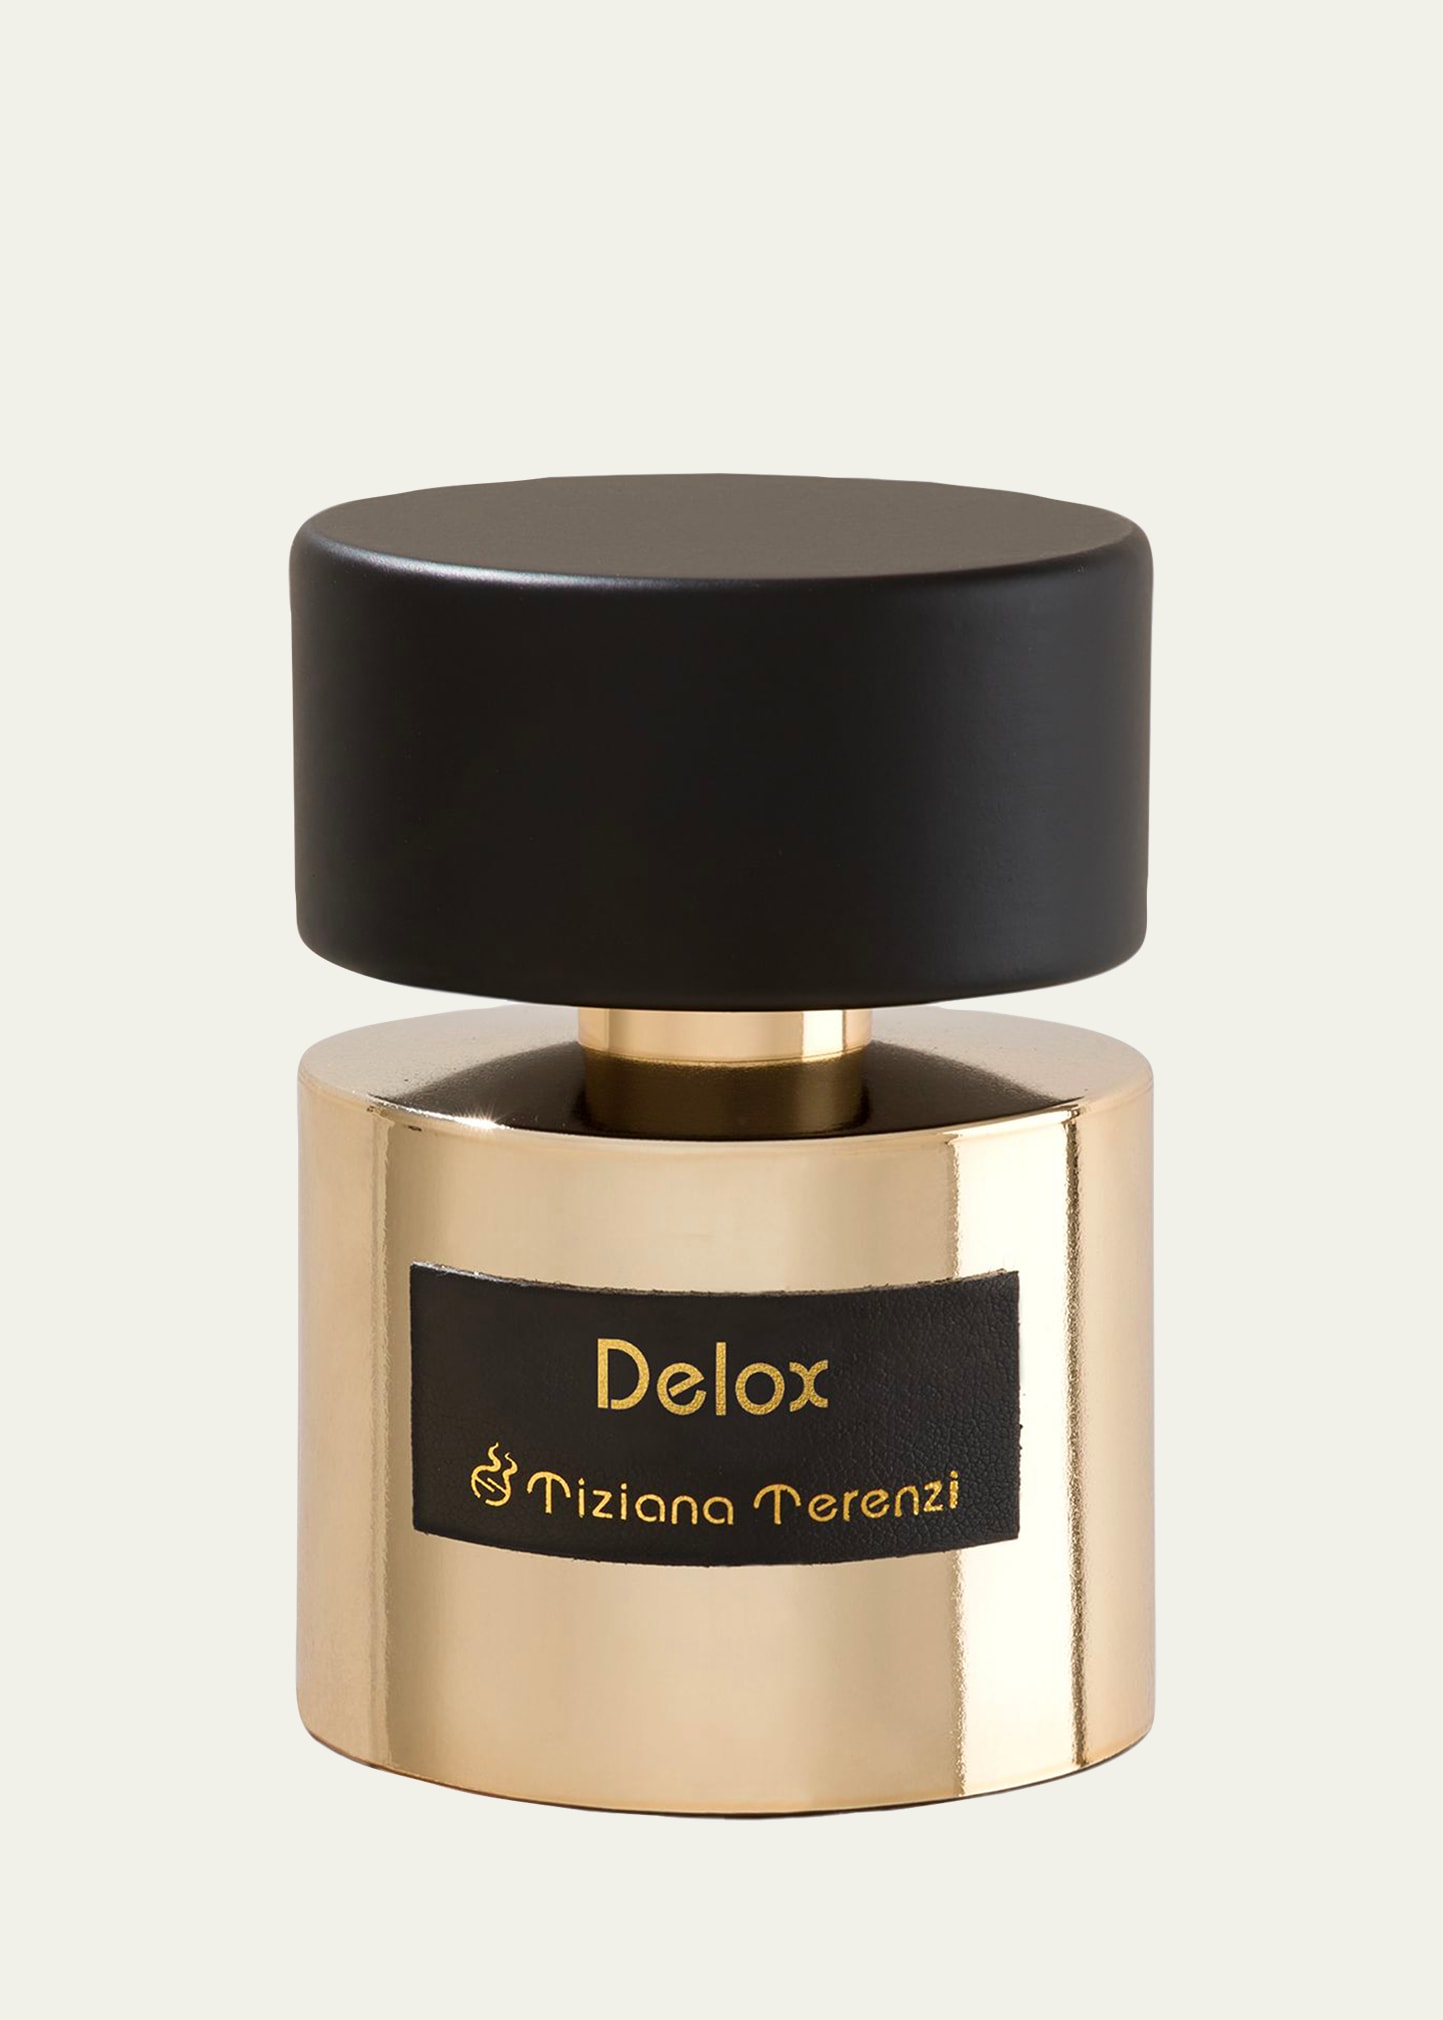 Delox Extrait de Parfum, 3.4 oz.